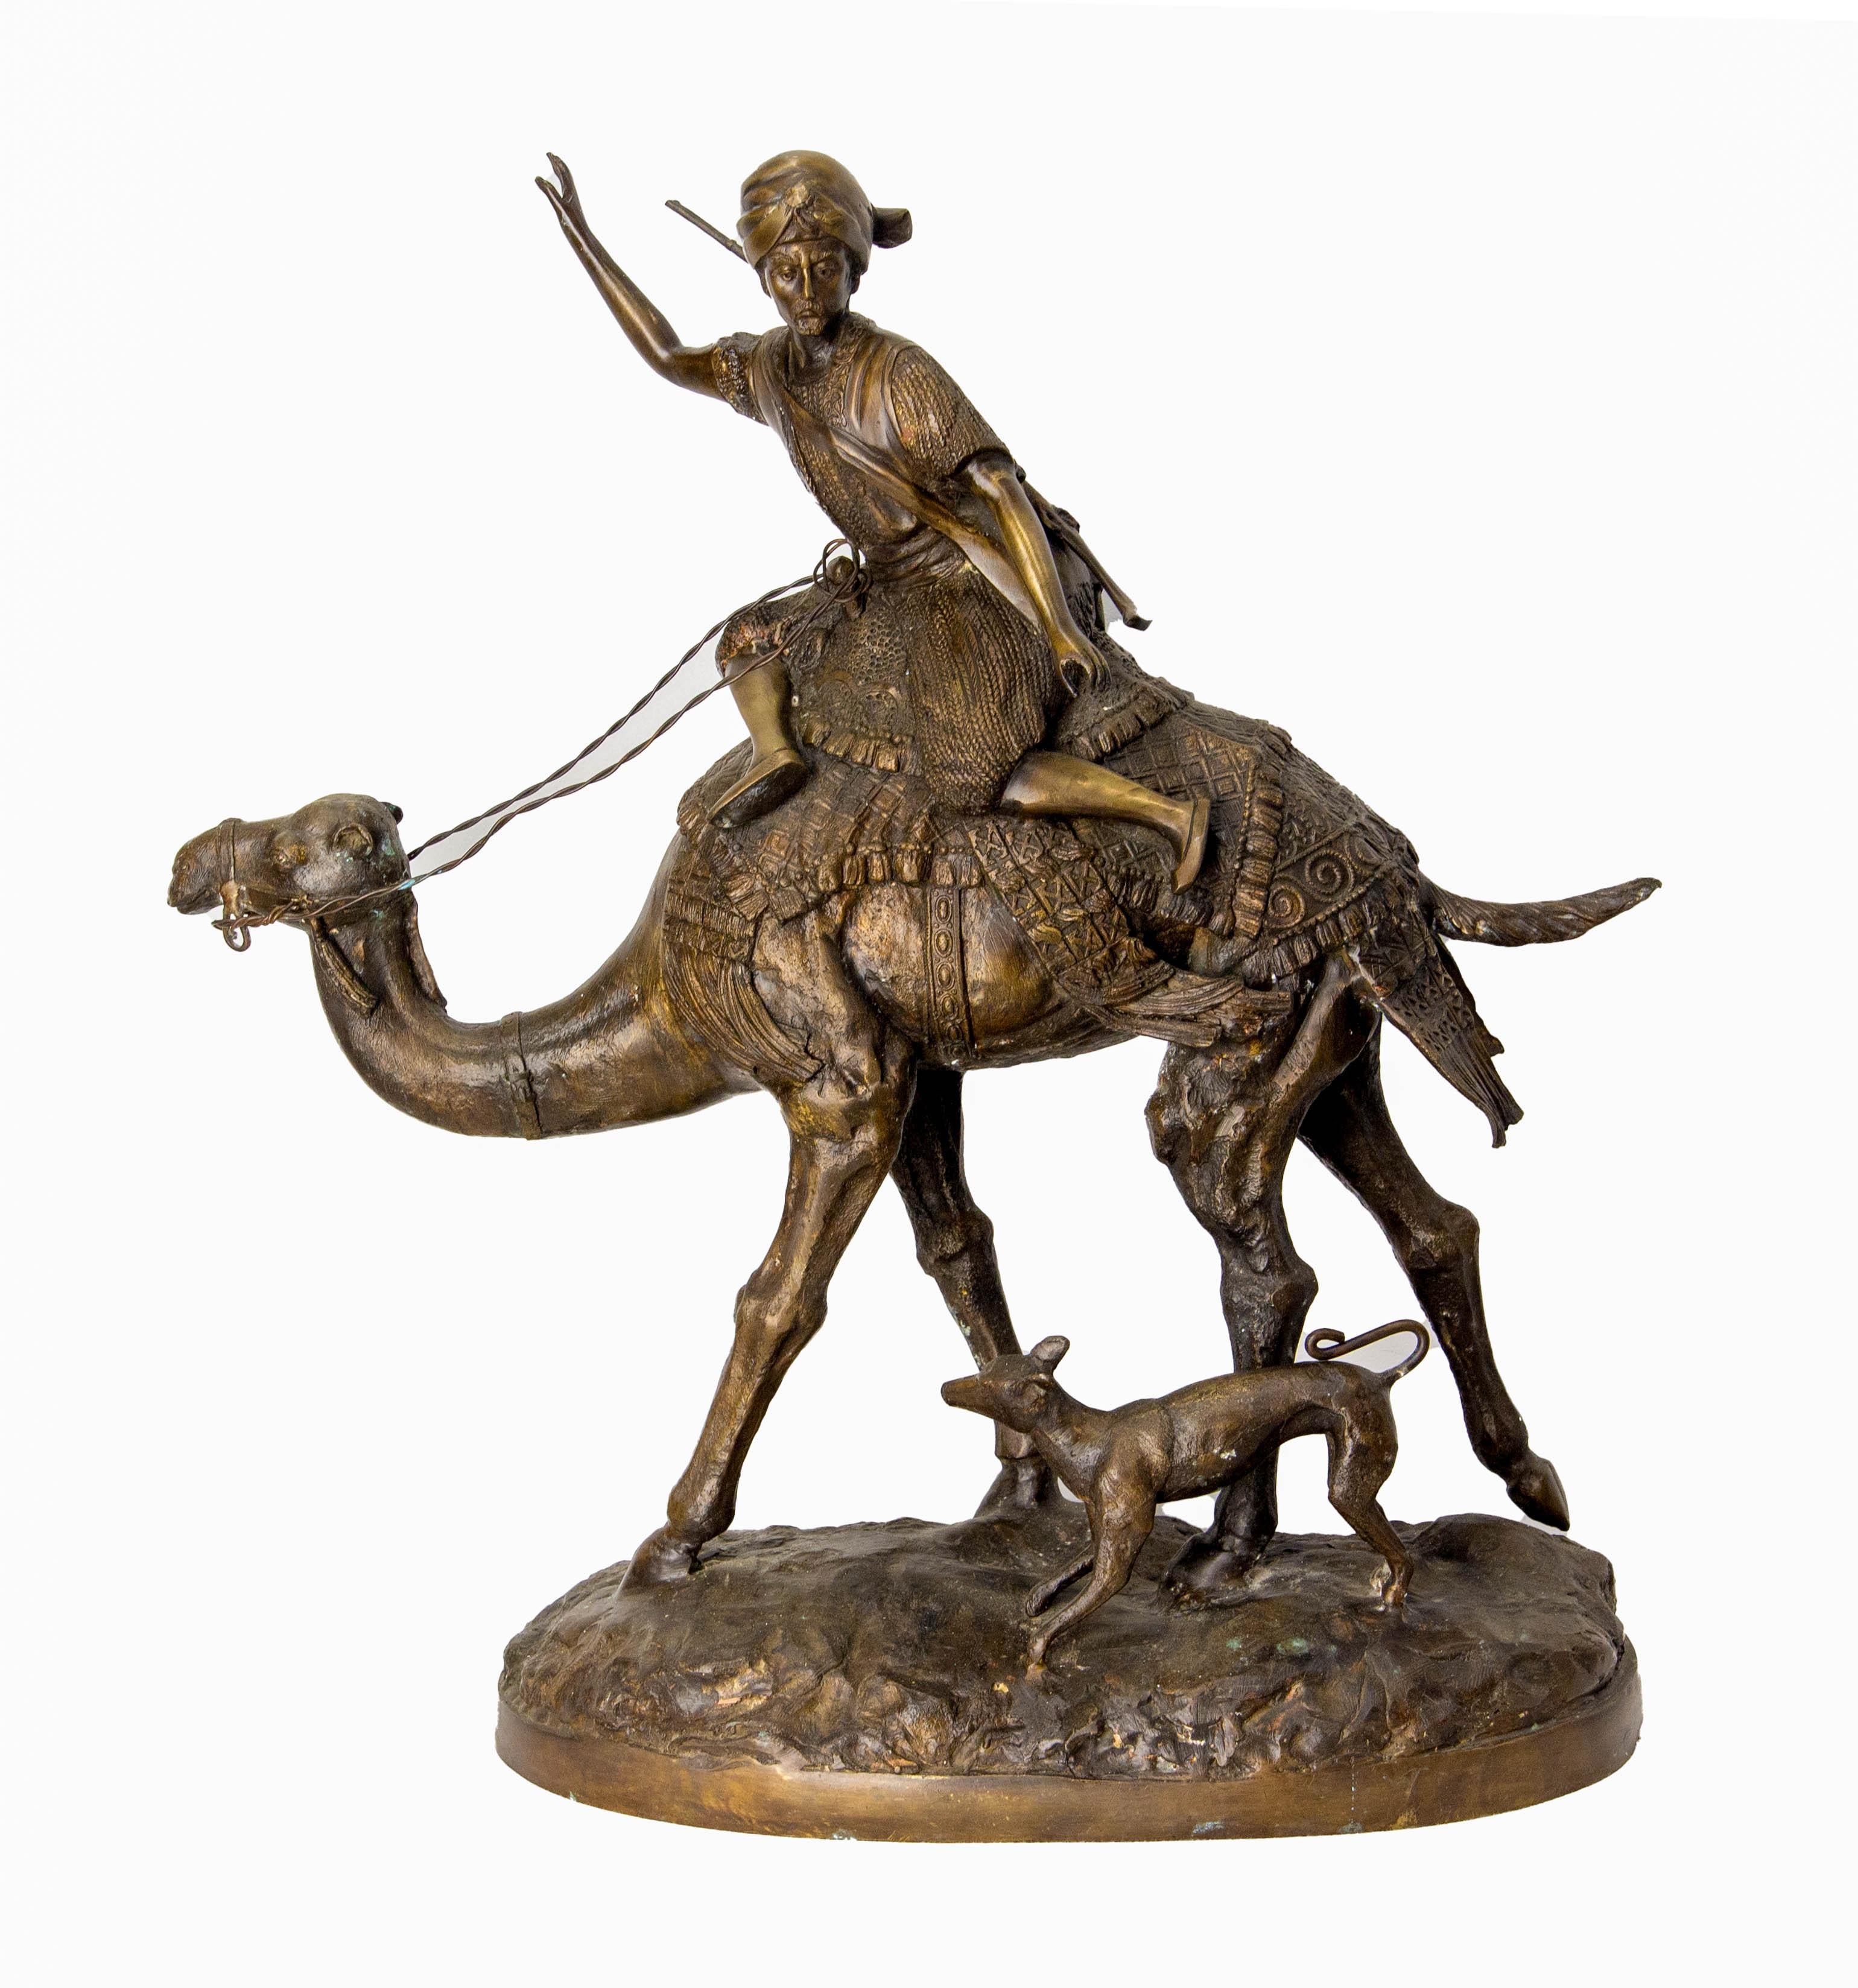 Français  statue en bronze d'un chasseur, d'un chameau et d'un chien.
Très beau traitement du sujet dans un style classique détaillé et nerveux avec une grande qualité de détails. 
Visage très expressif et posture corporelle du personnage qui donne